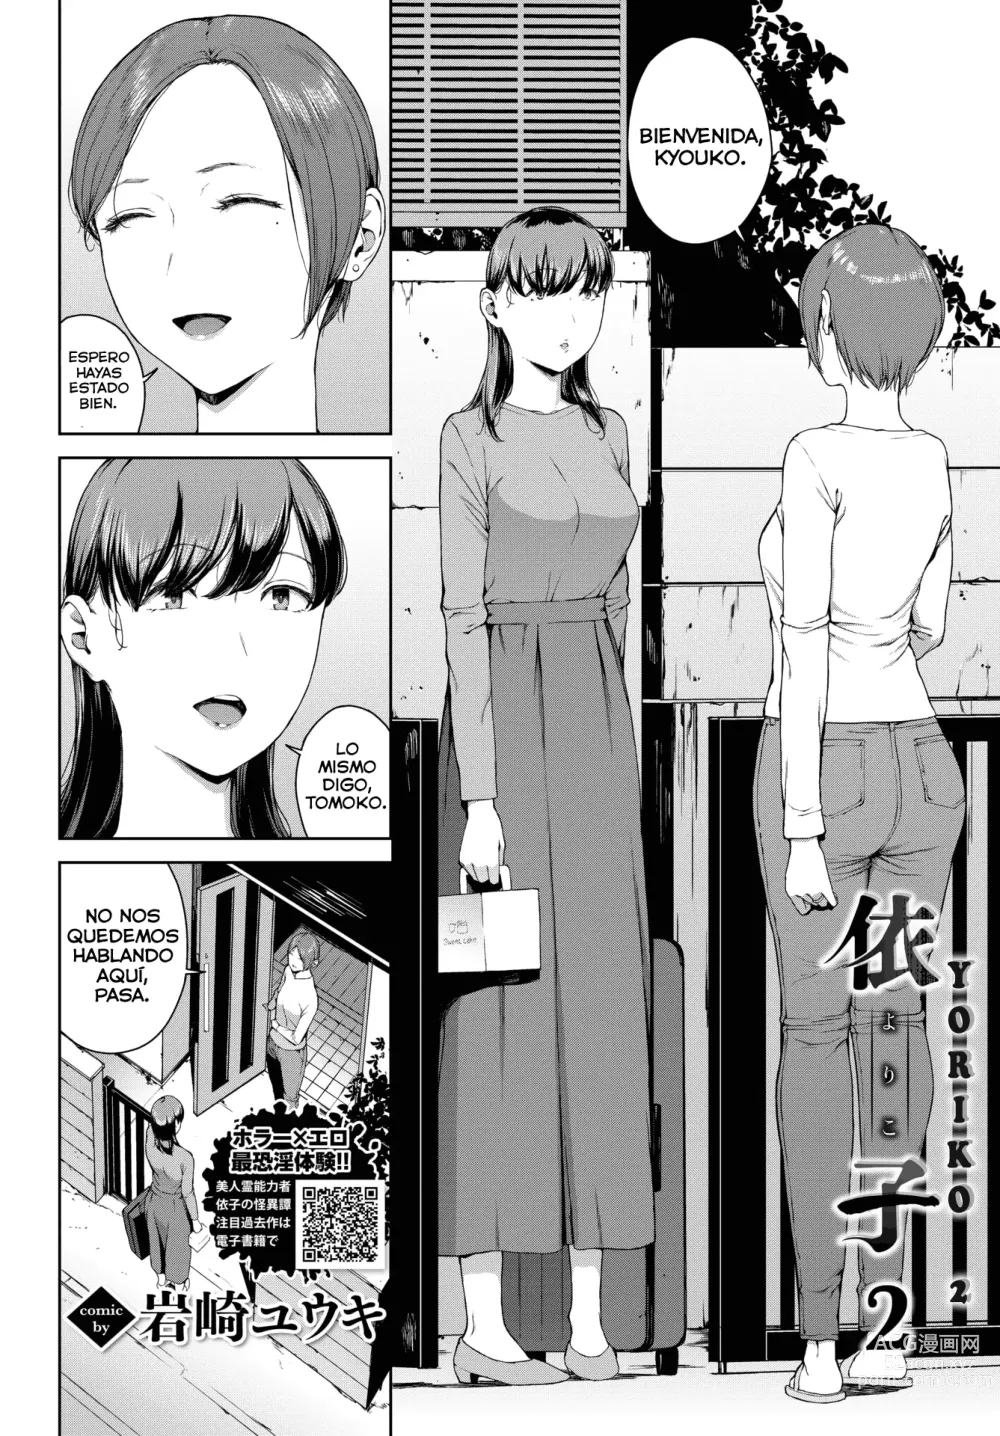 Page 2 of manga Yoriko Parte 02